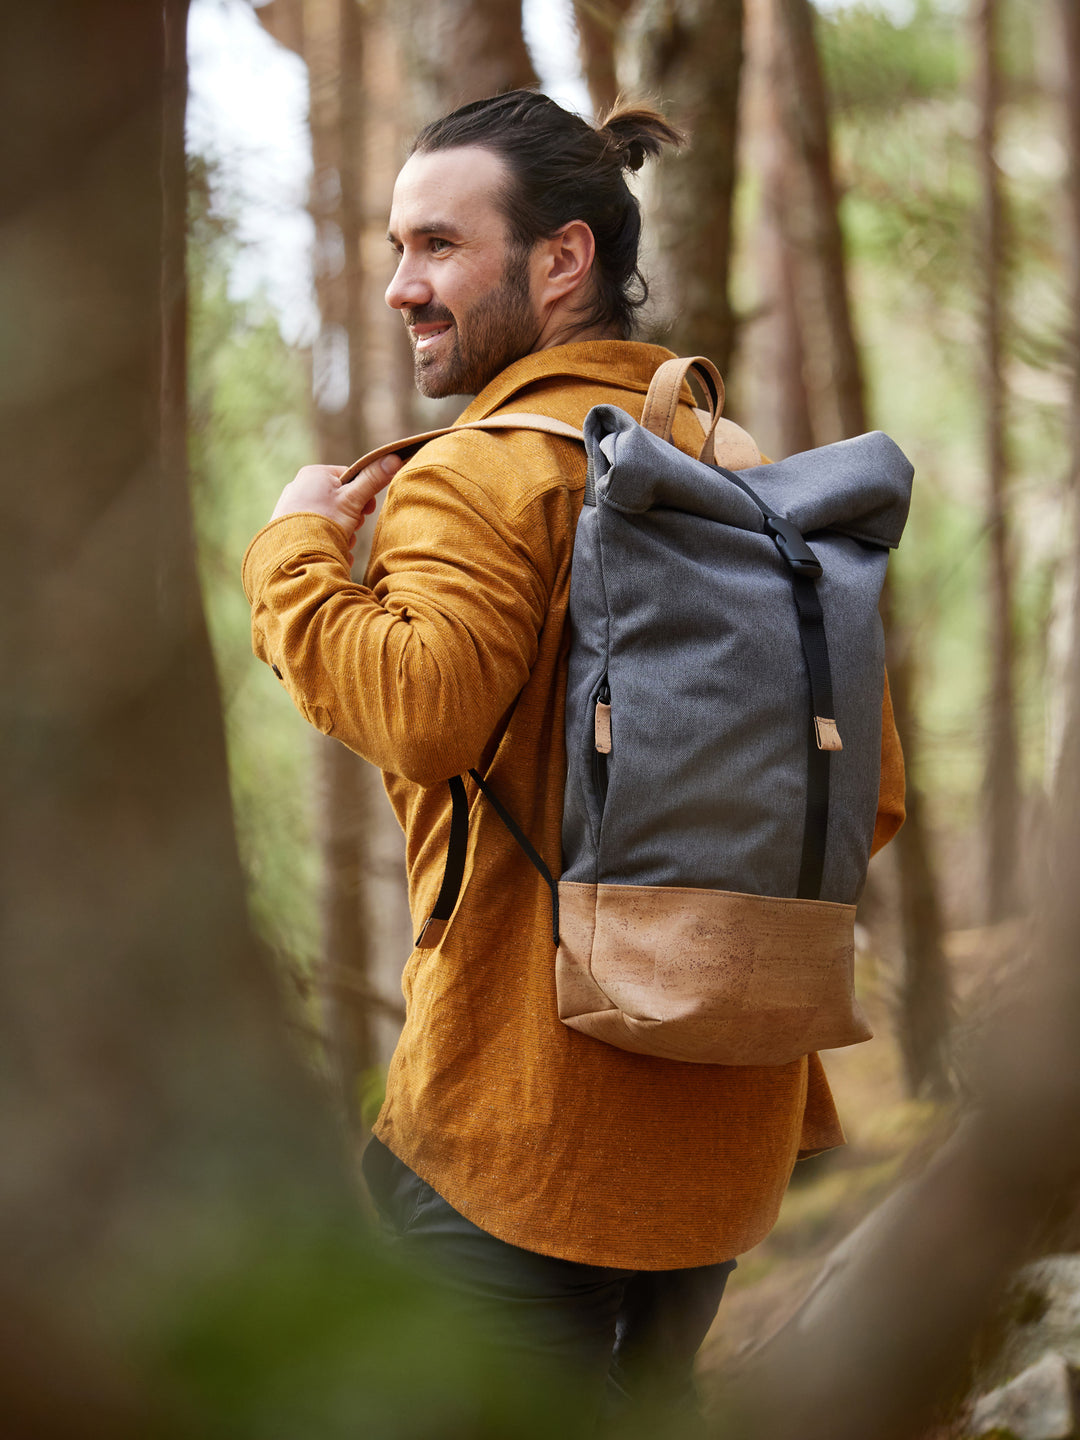 Junger Mann im Wald trägt lächelnd grauen Rucksack mit hellem Korkboden über der linken Schulter